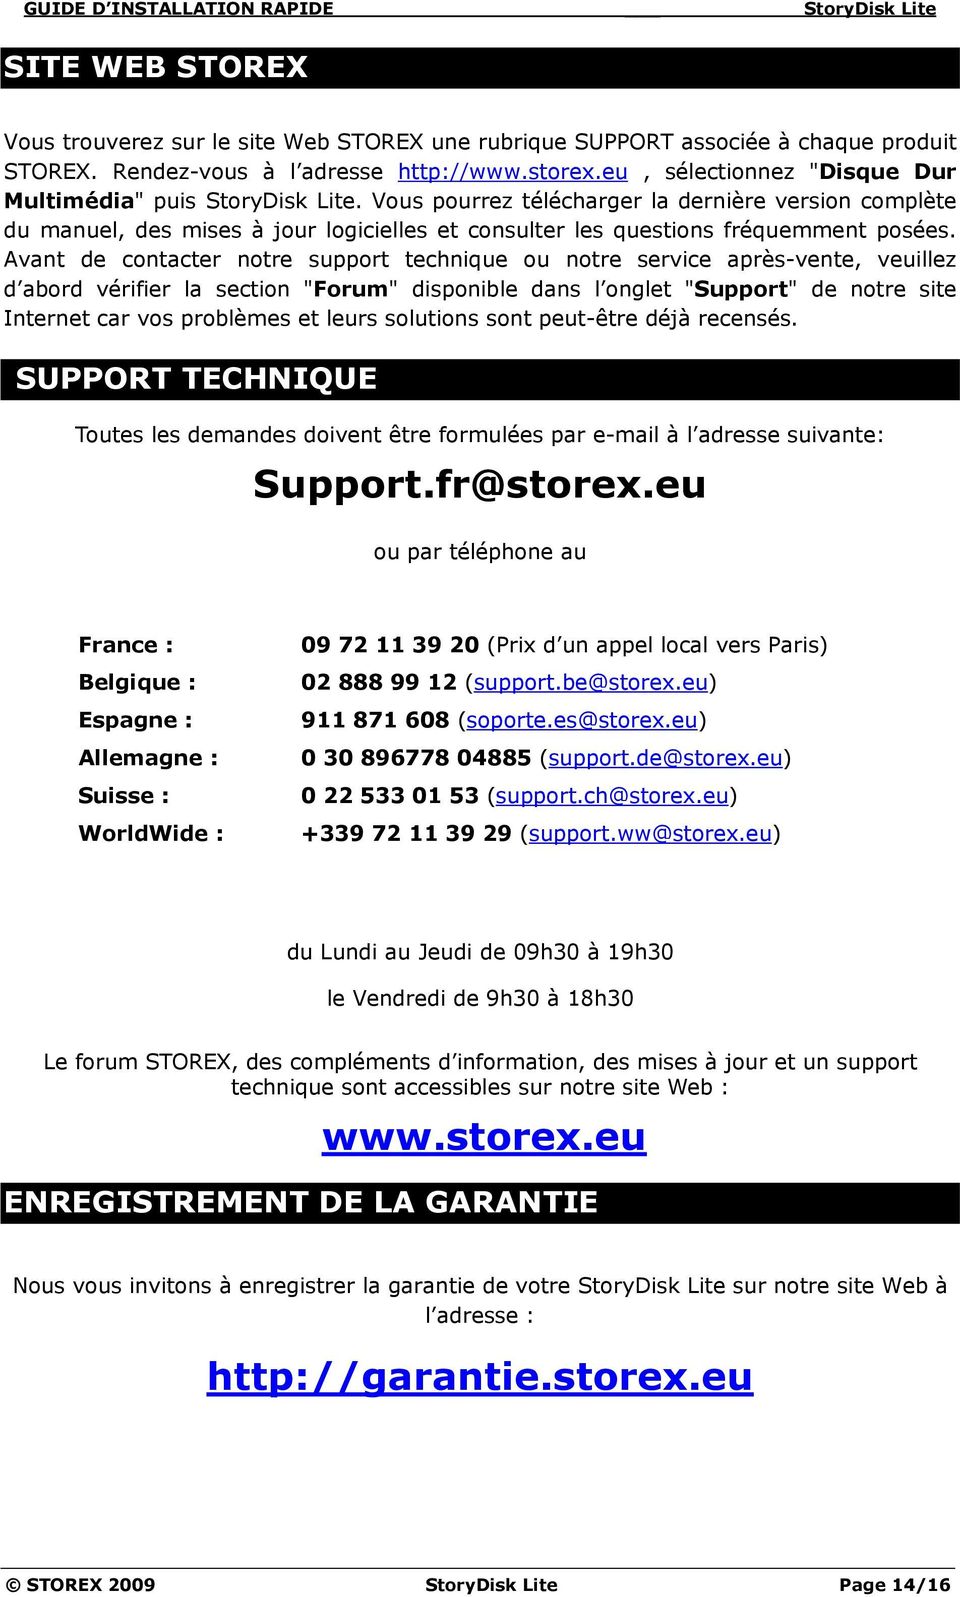 GUIDE D INSTALLATION RAPIDE StoryDisk Lite - PDF Free Download